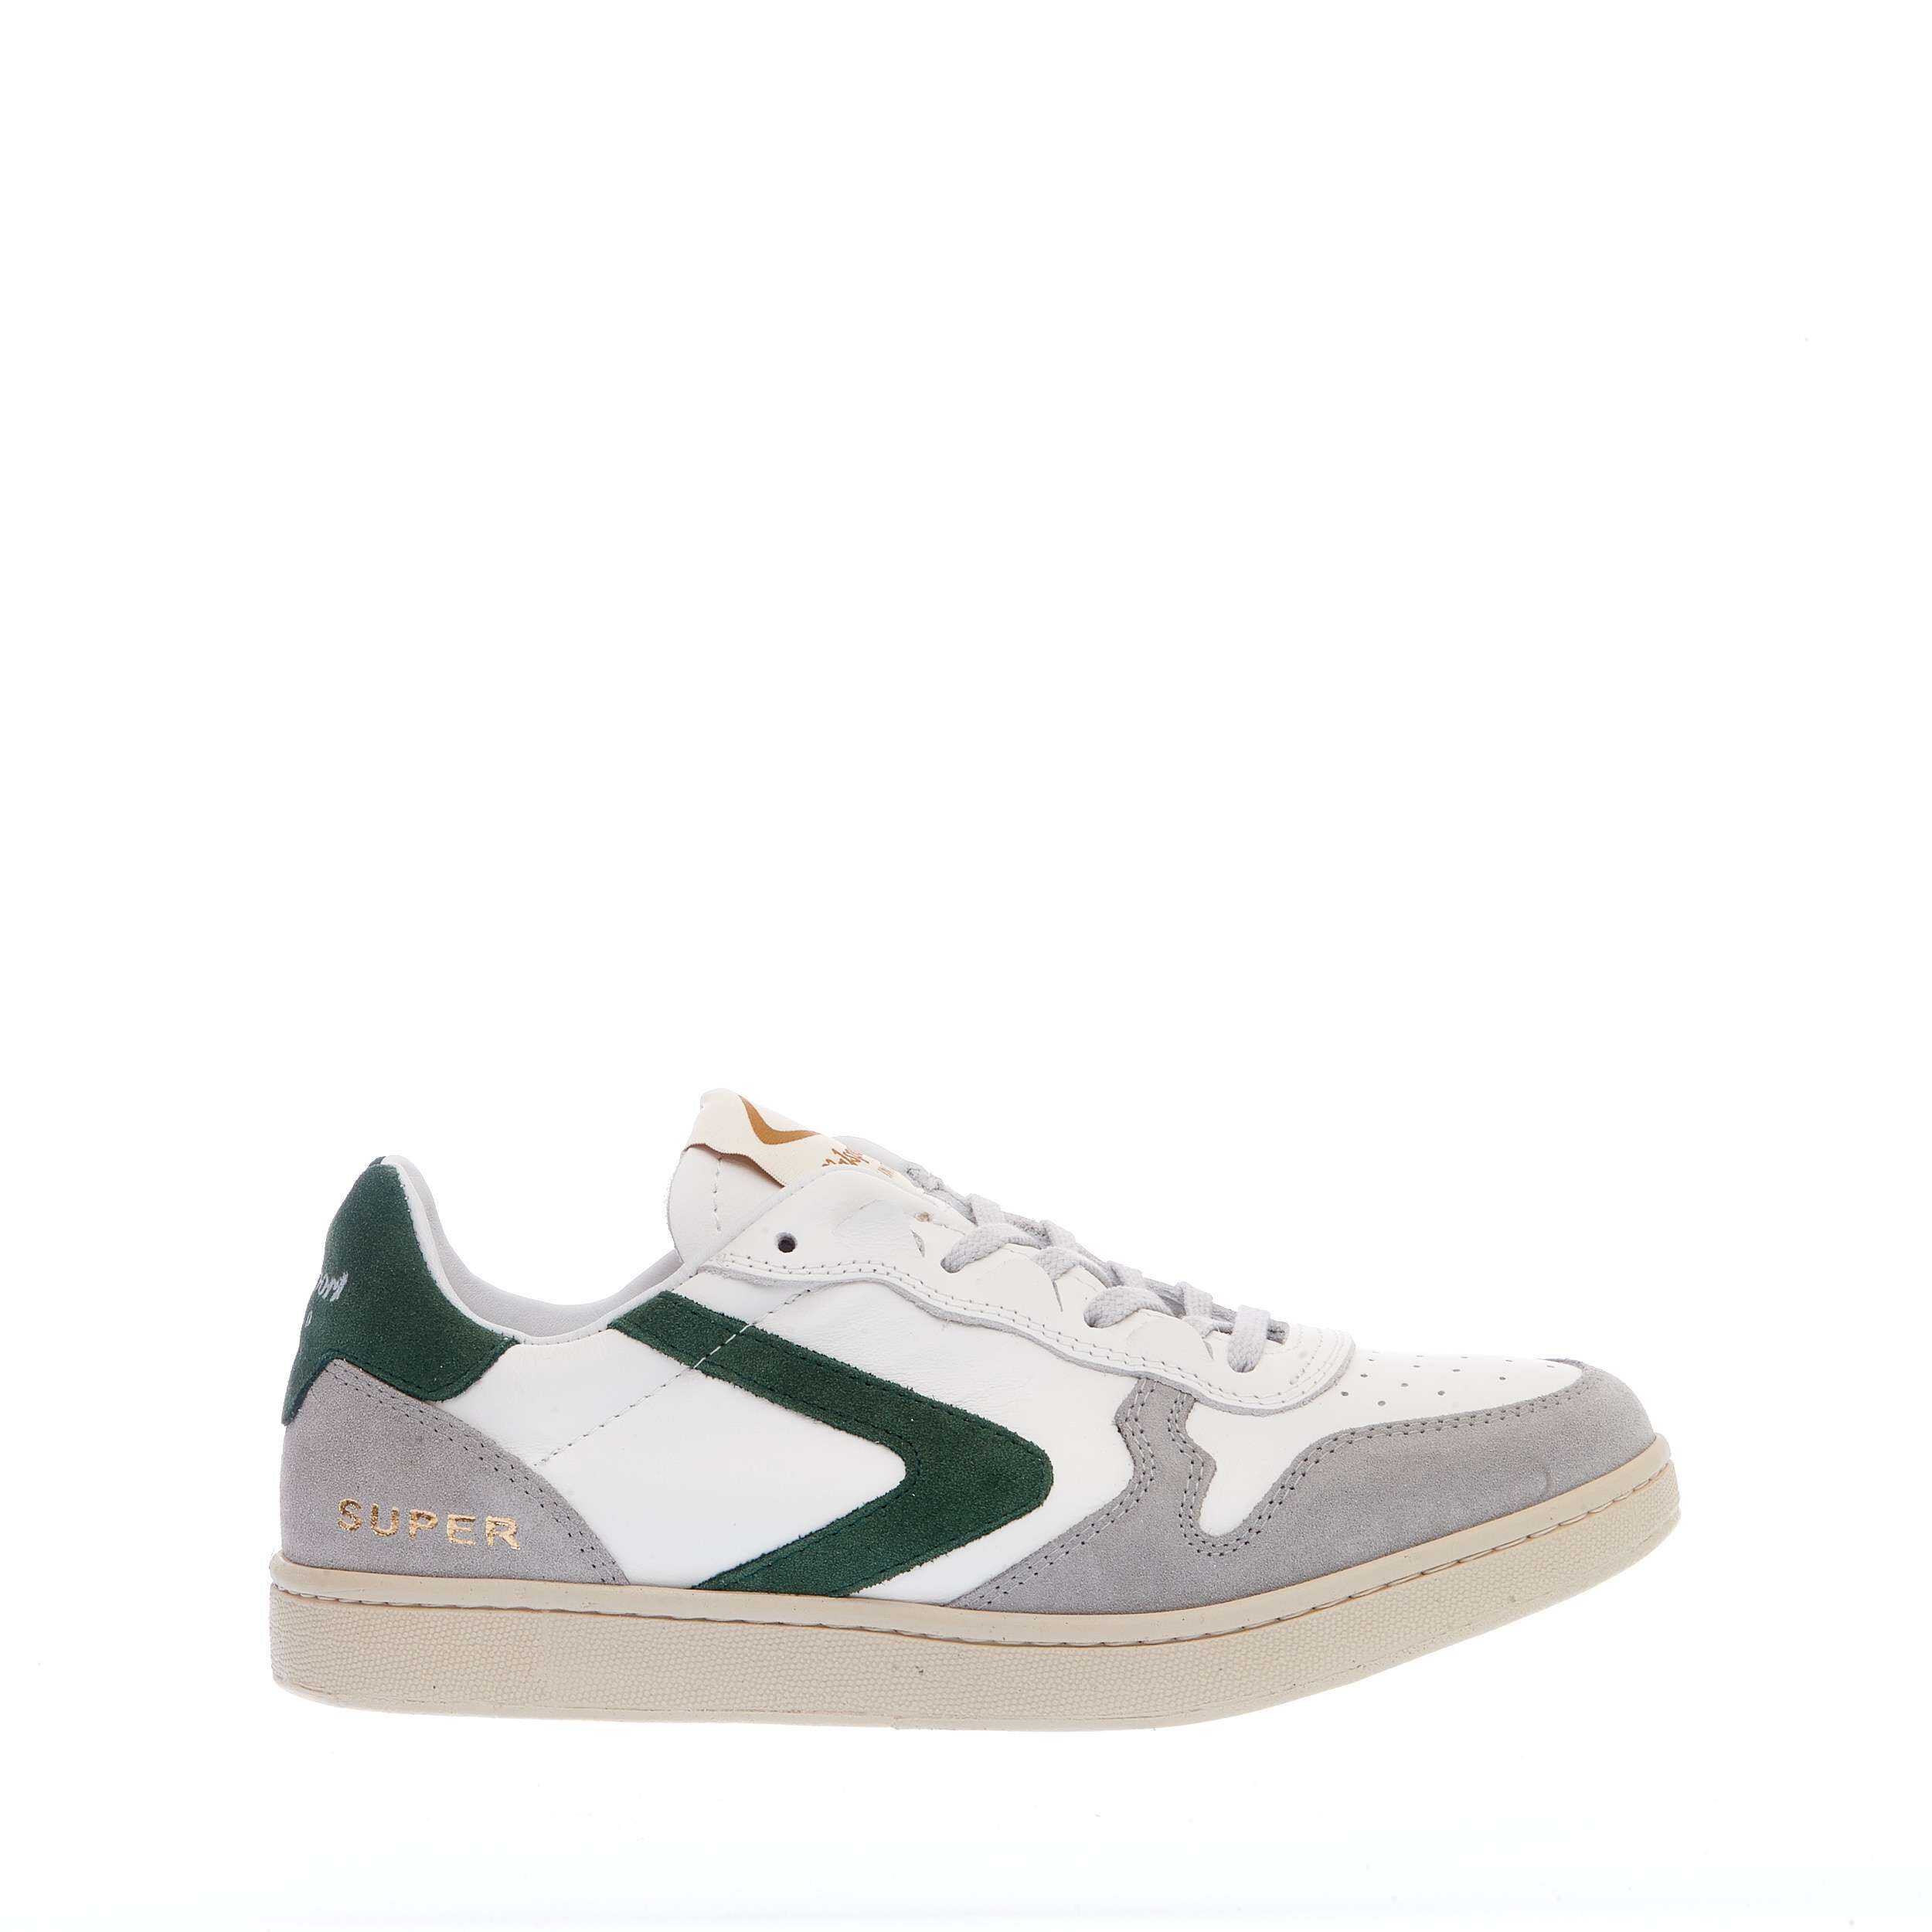 VALSPORT Sneakers Super Cam Grigio Pelle Bianco Slash Verde White